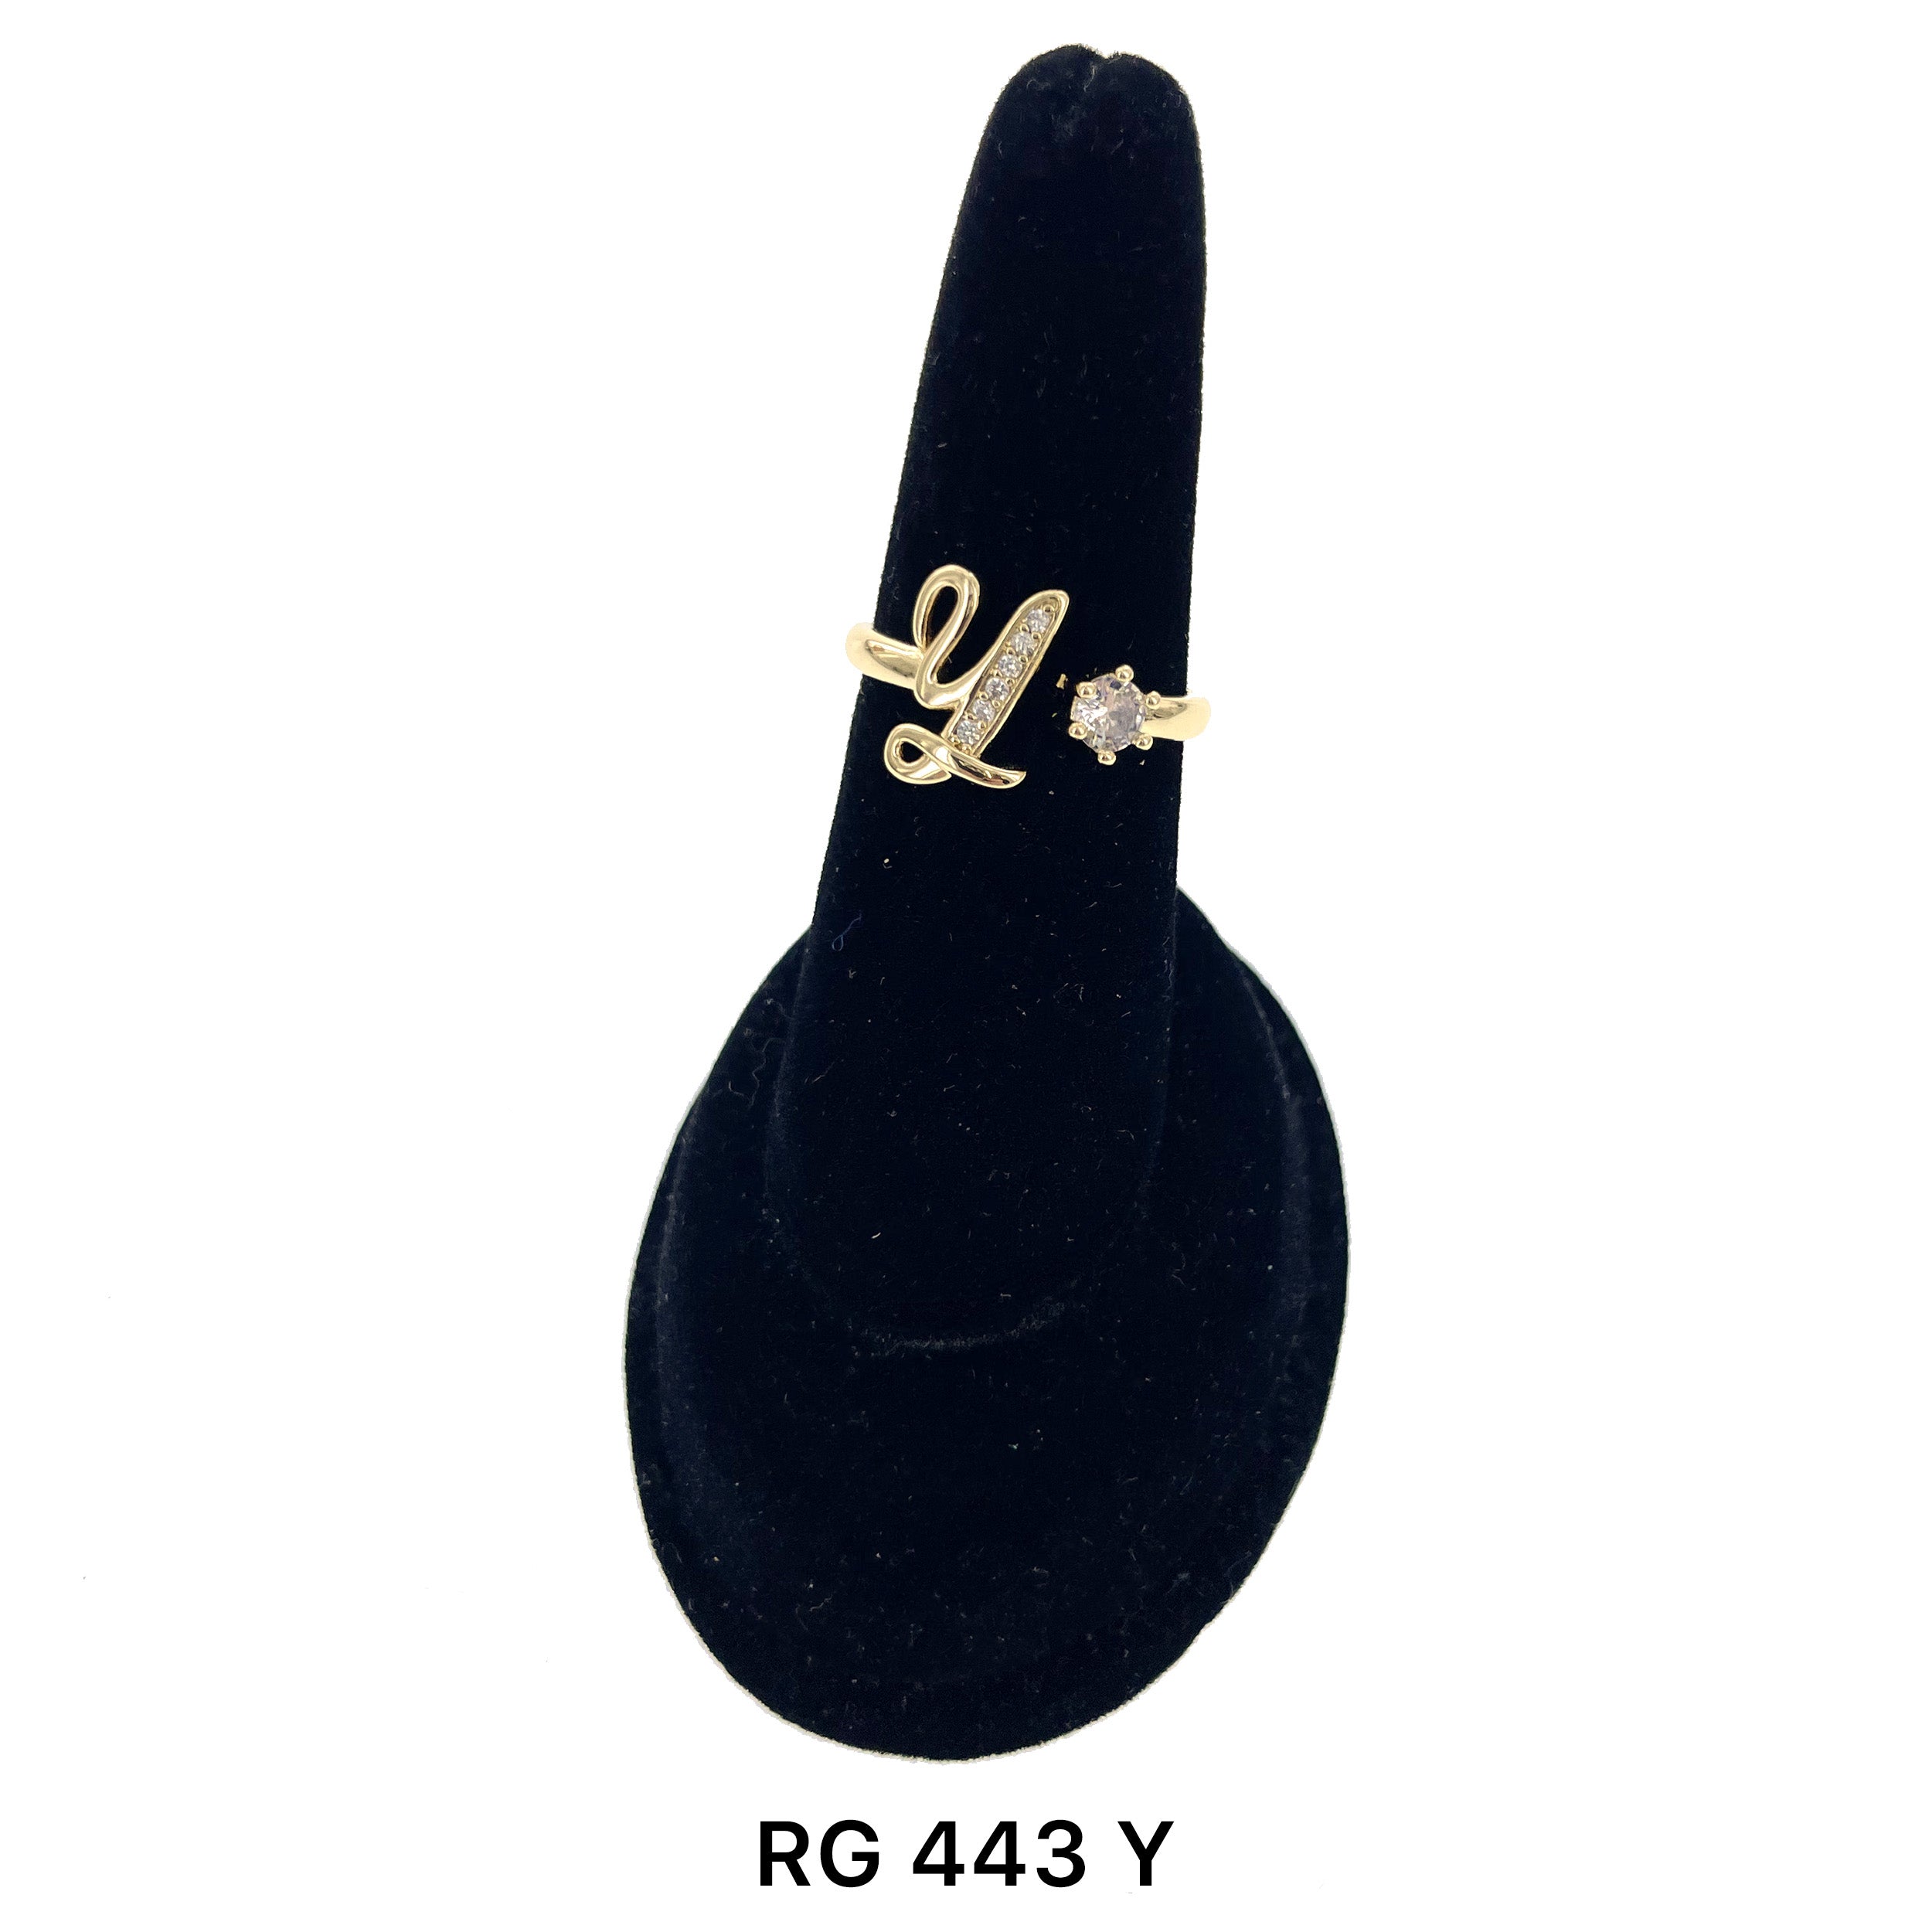 Initial Adjustable Ring RG 443 Y